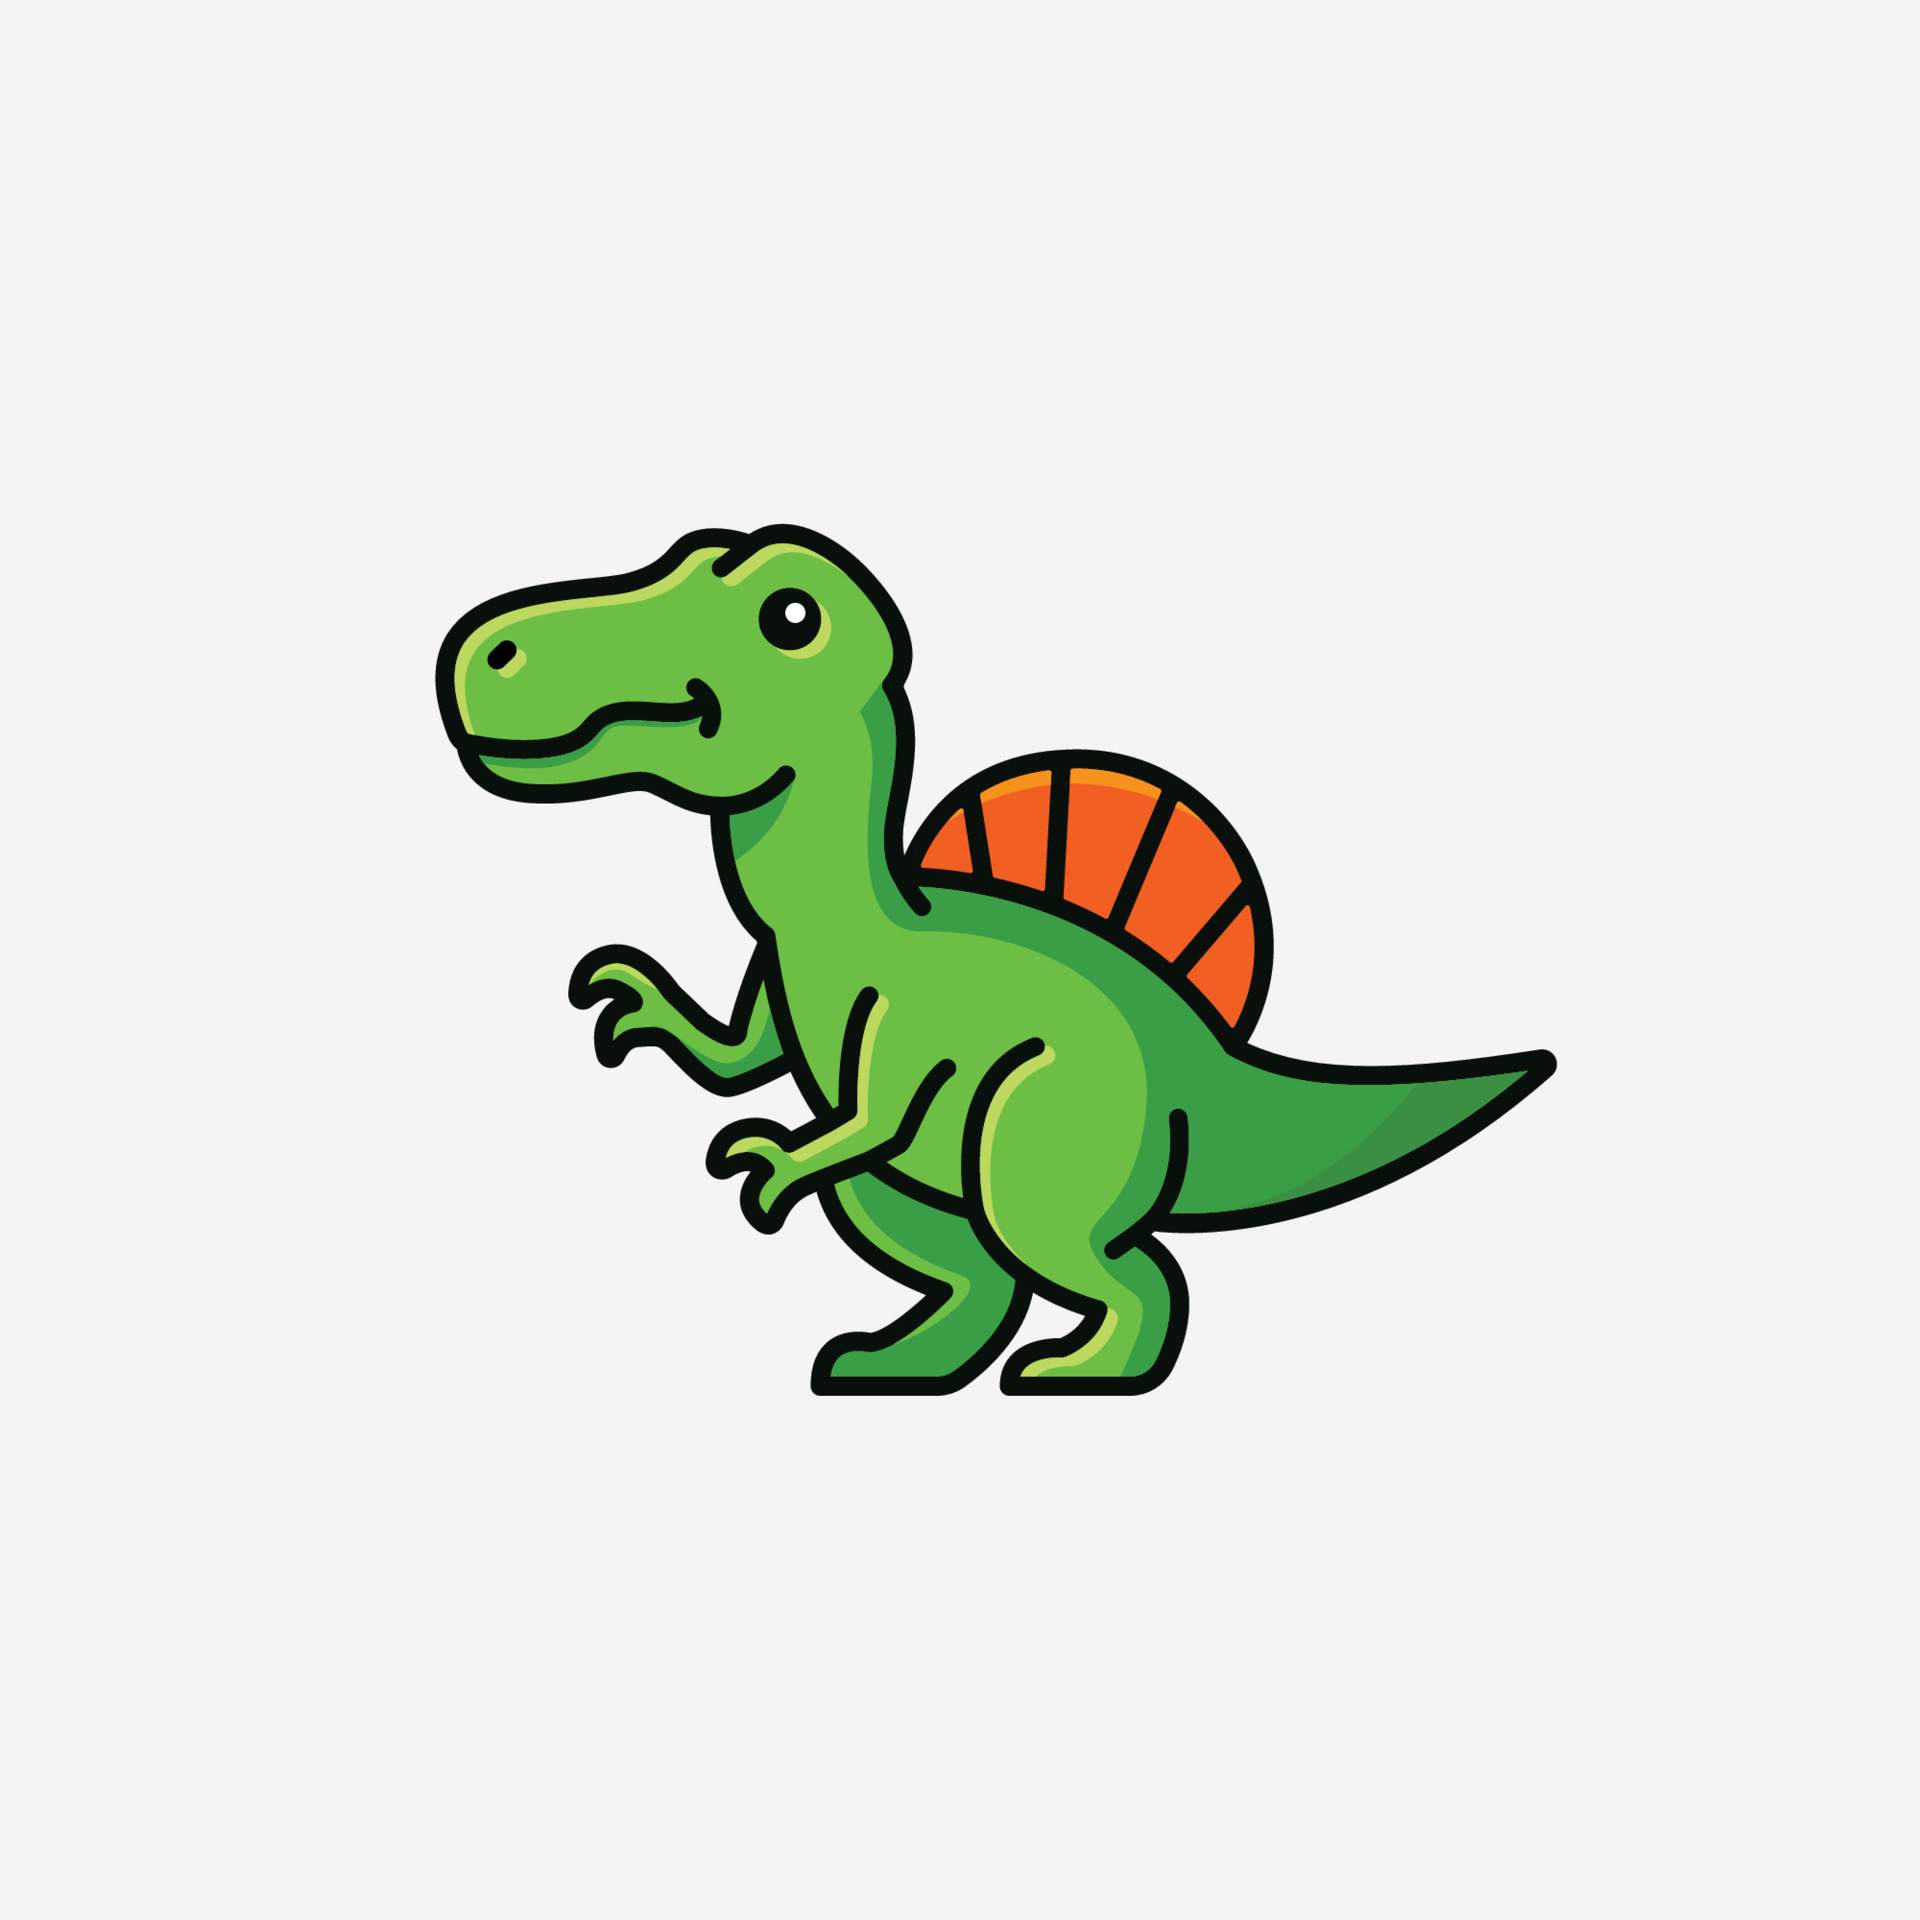 cute baby tyrannosaurus rex cartoon dinosaur character